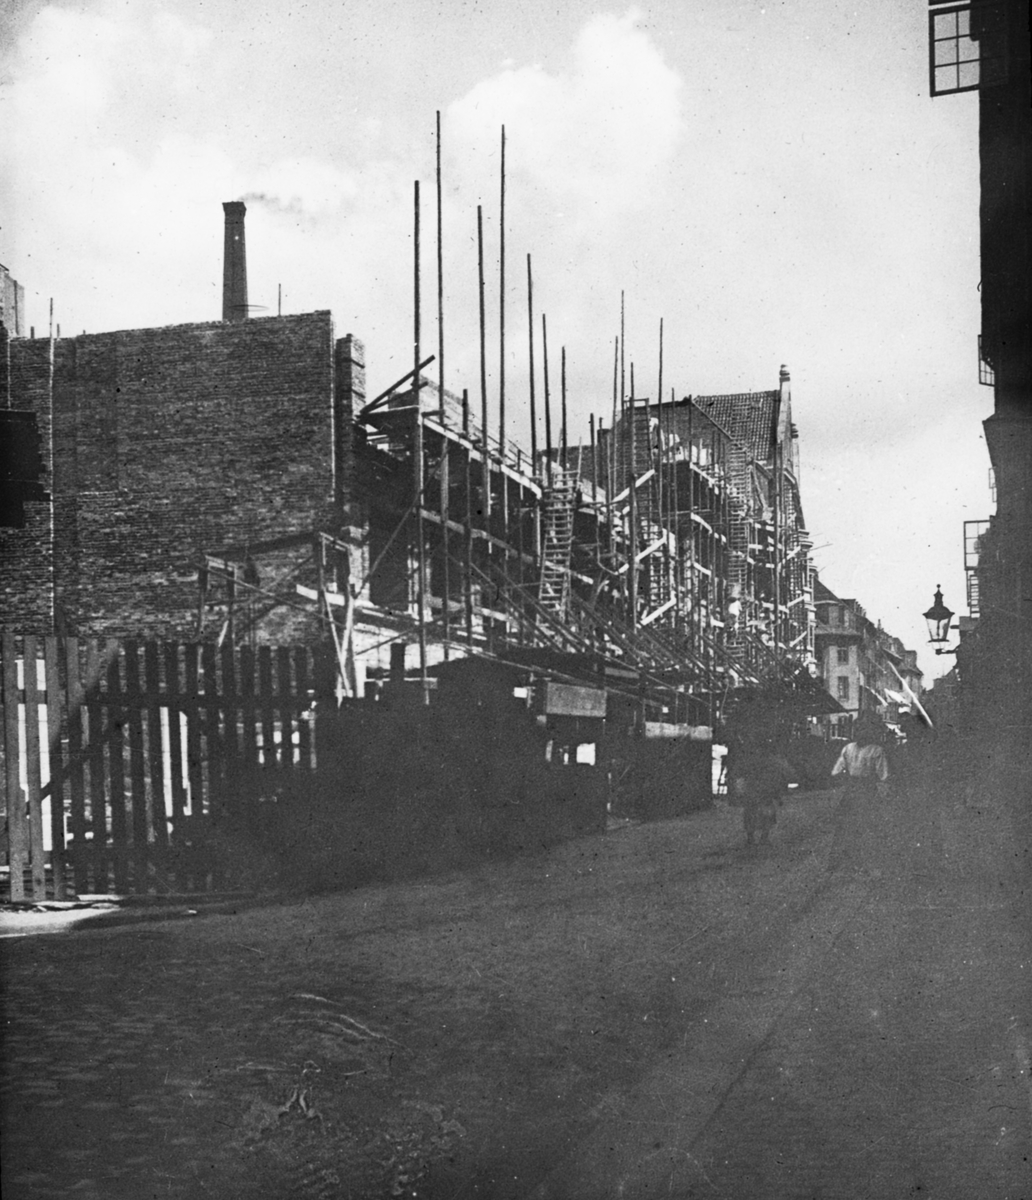 Skioptikonbild med motiv av husbygge/ husrenovering i Köpenhamn.
Bilden har förvarats i kartong märkt: Köpenhamn 8. 1908